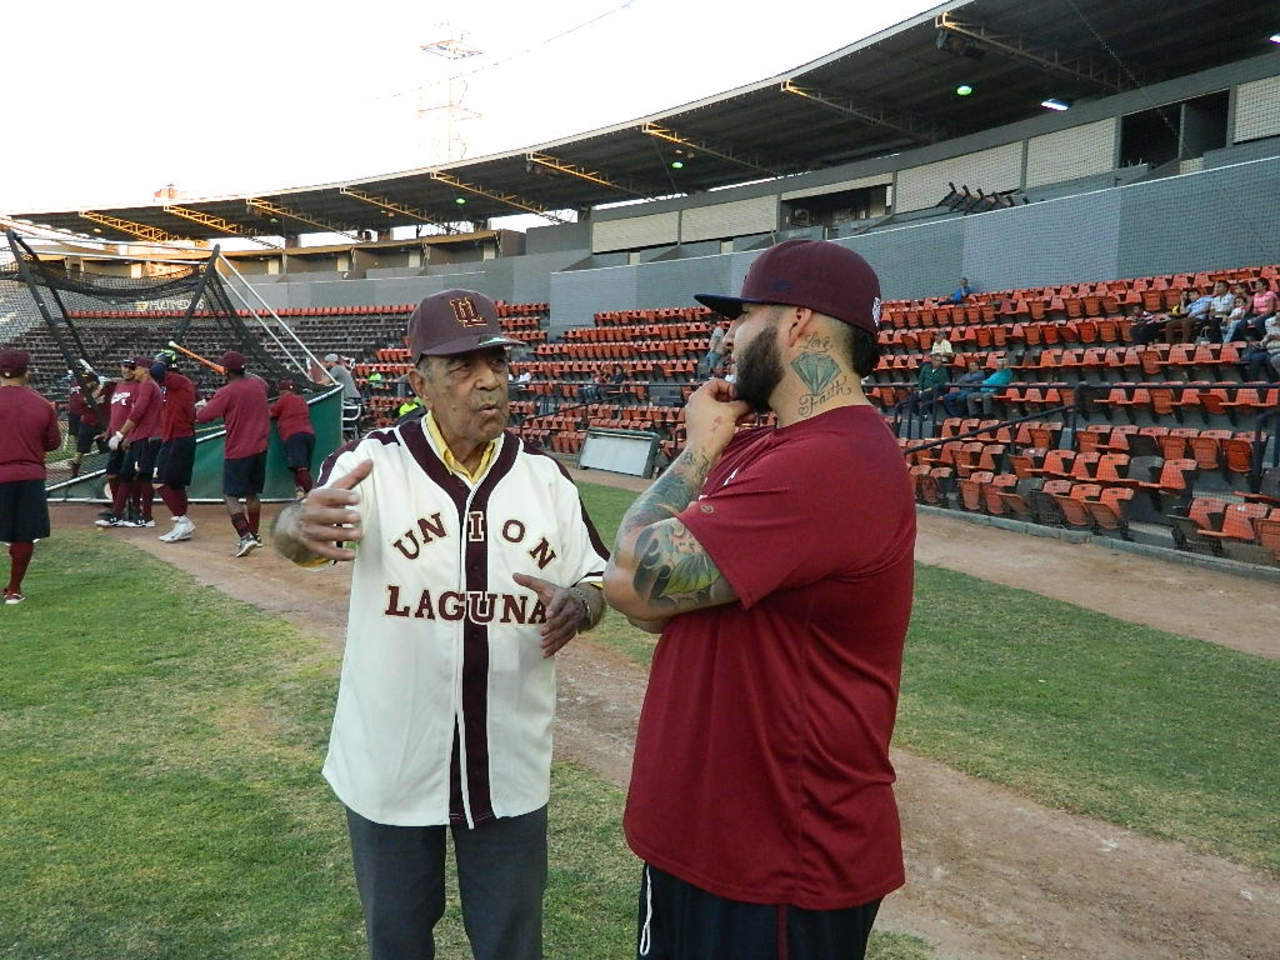 Luis Muruato platicó con Ricky Álvarez y le dejó saber la gran responsabilidad de ser el cuarto bate del equipo. (Fotos de Lauro Domínguez)